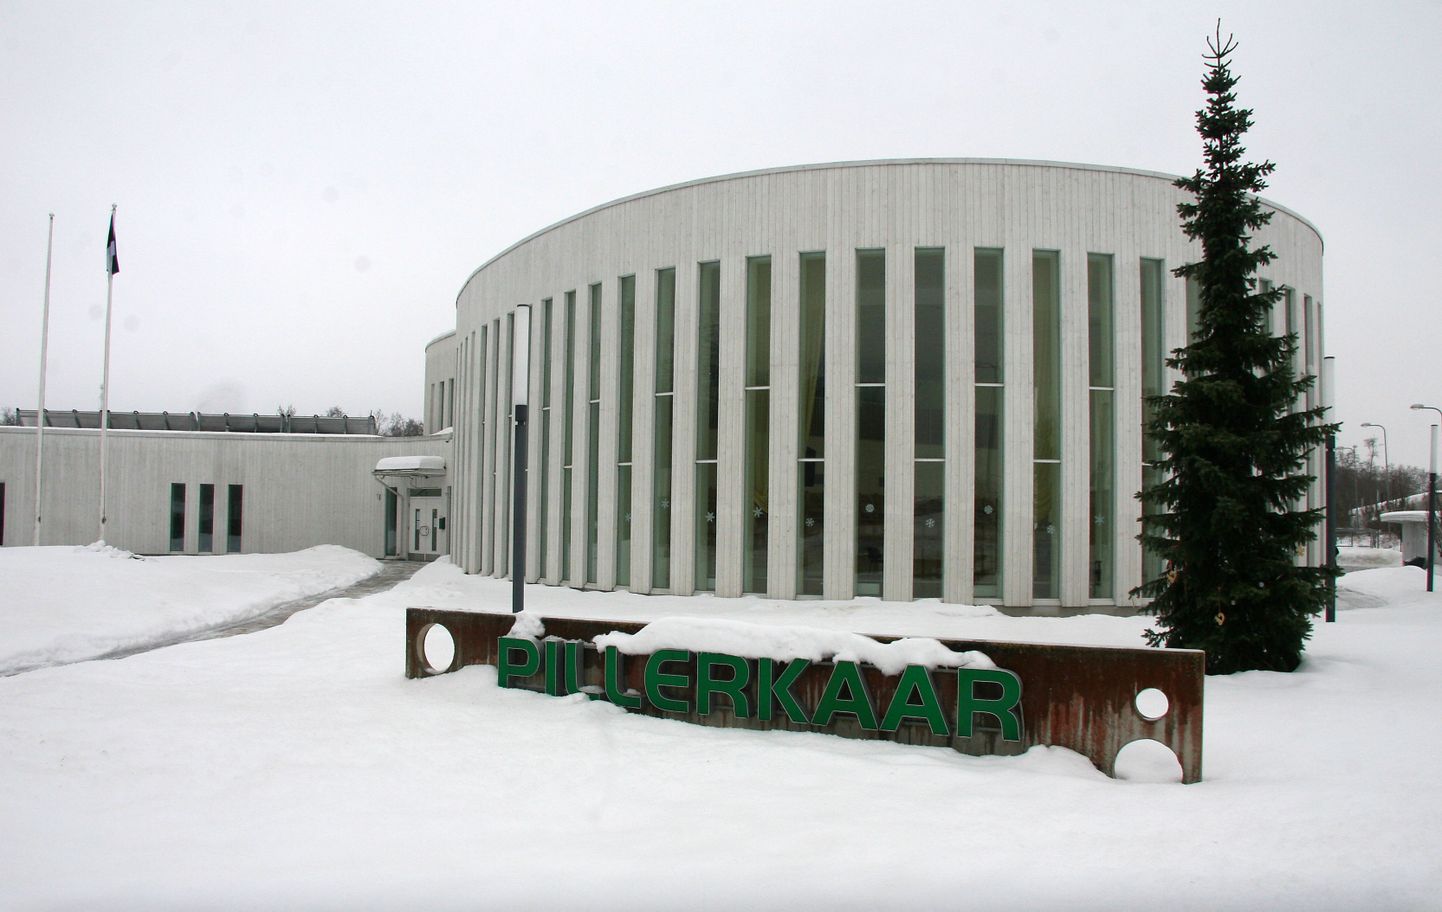 Расположенный на краю Йыхвиского парка детсад "Pillerkaar" закрылся до следующего вторника.